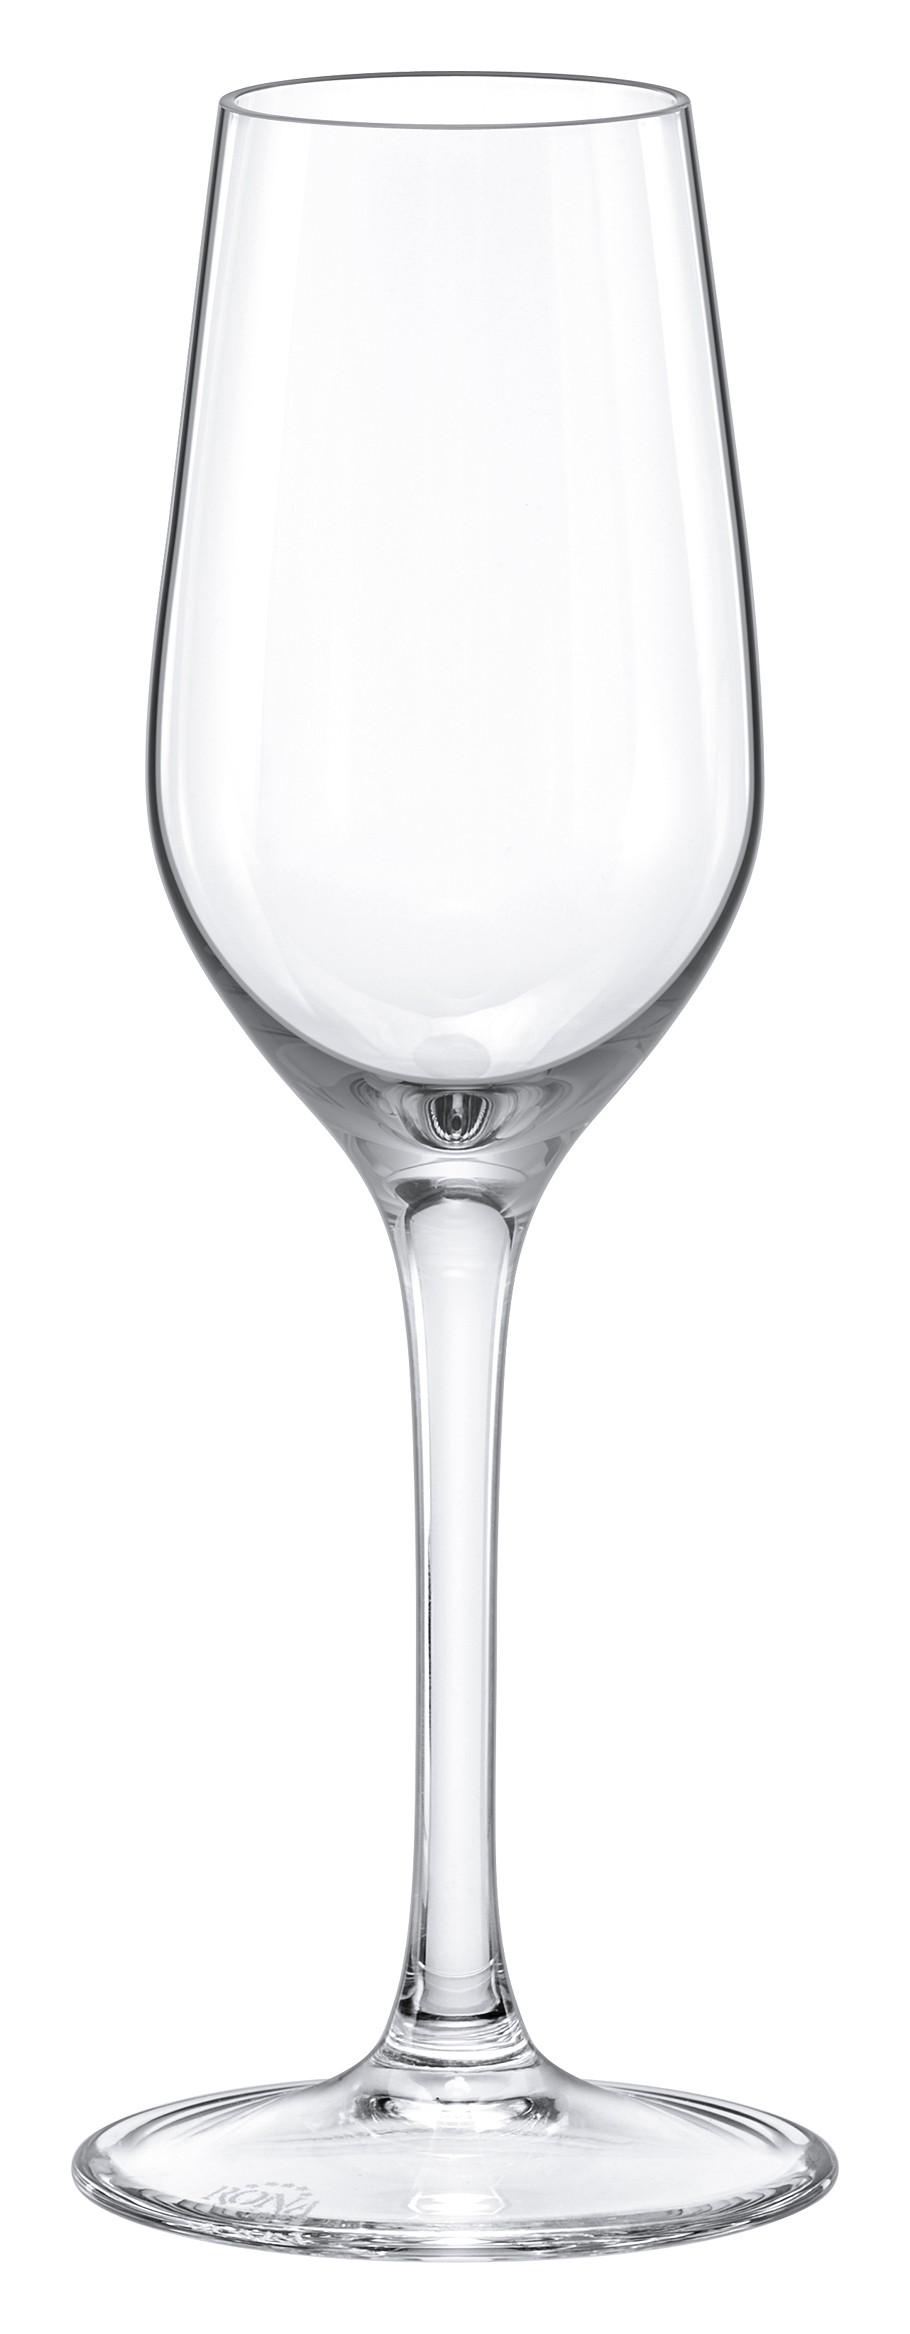 Ποτήρι Λευκού Κρασιού Γυάλινο Διάφανο Ratio Max Home 340ml RN63390340 (Σετ 6 Τεμάχια) (Υλικό: Γυαλί, Χρώμα: Διάφανο , Μέγεθος: Κολωνάτο) – Max Home – RN63390340